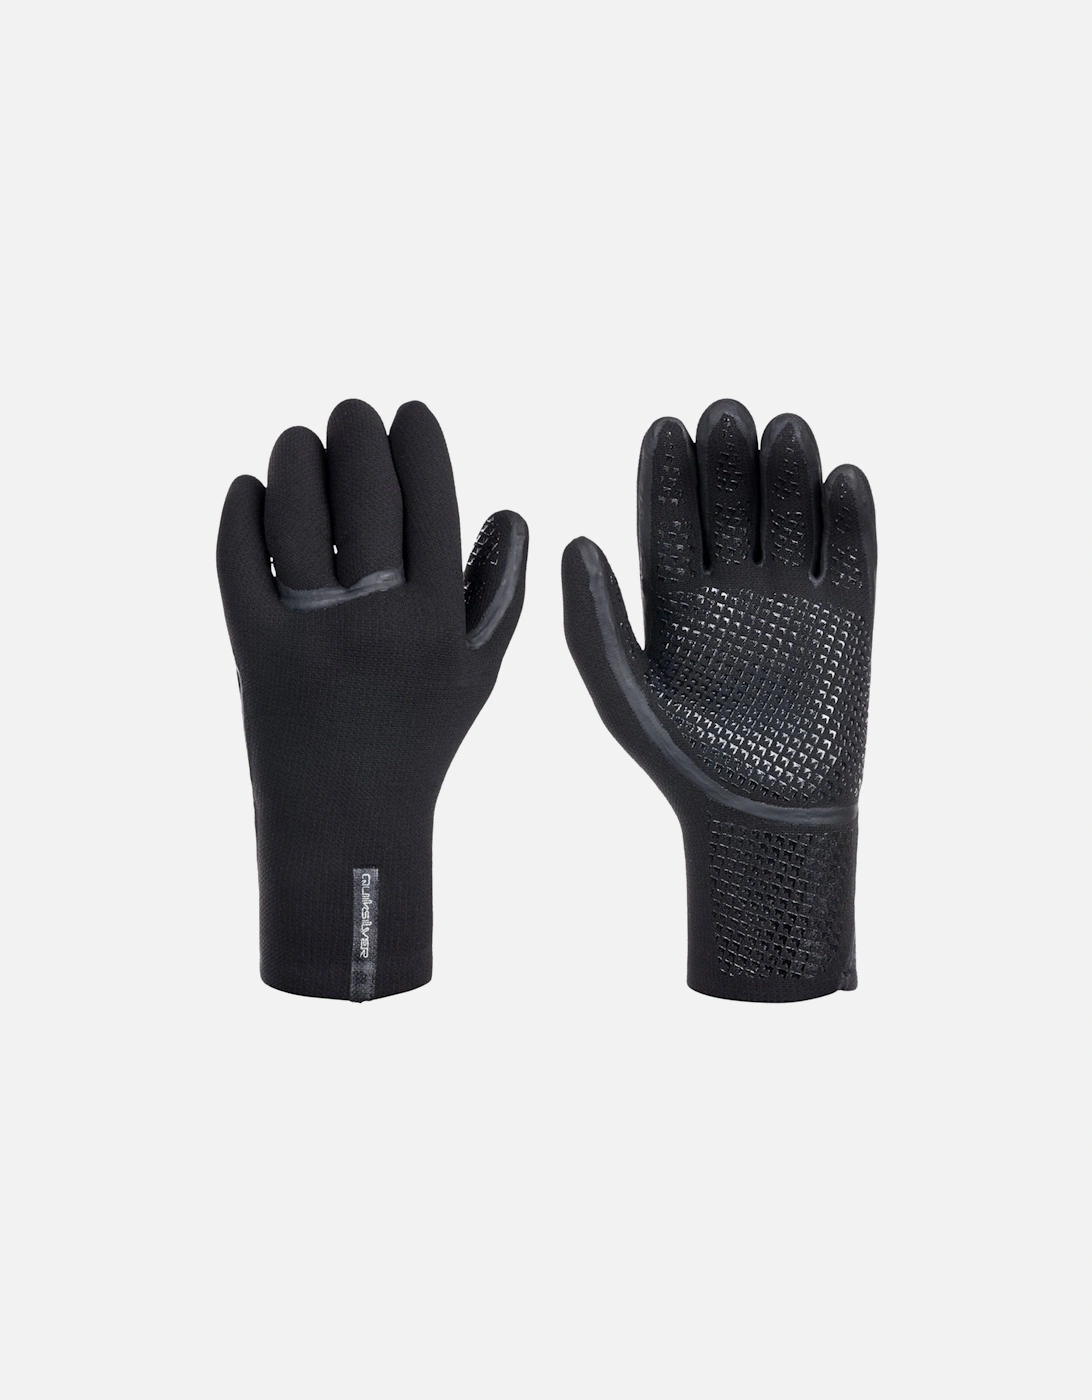 Mens 3mm Marathon Sessions Neoprene Surf Gloves - Black, 5 of 4